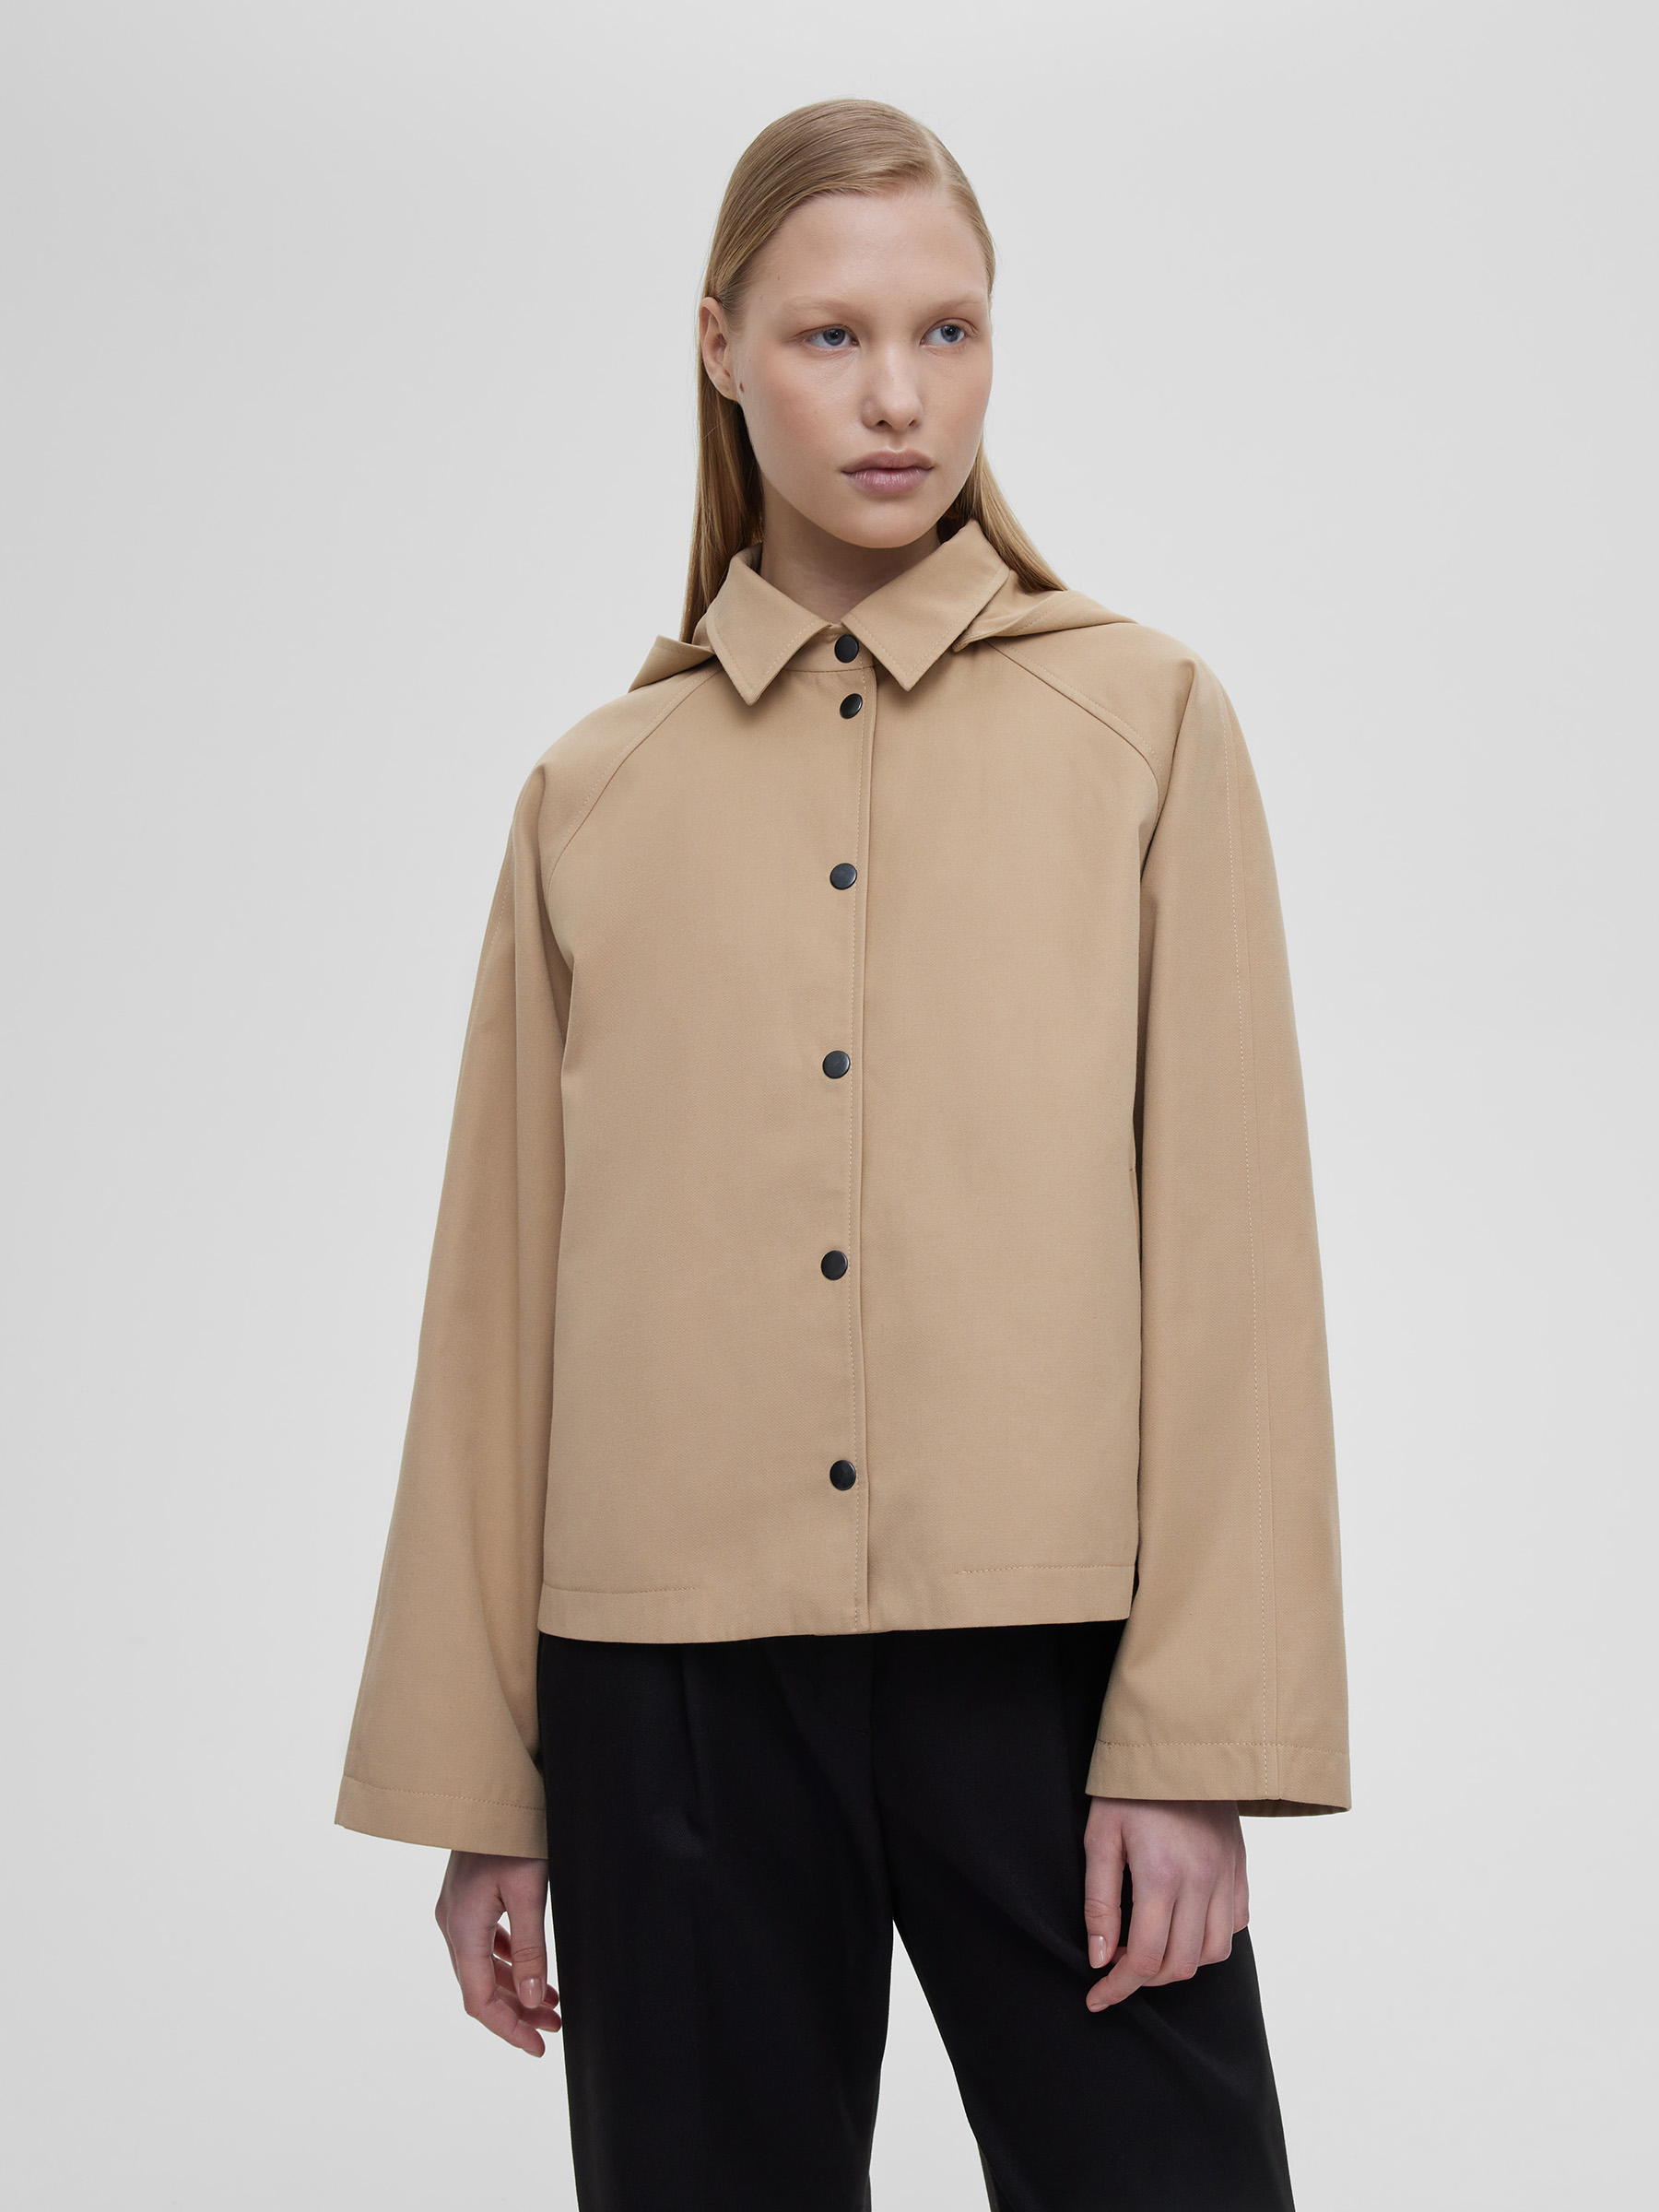 Куртка женская укороченная из хлопка с капюшоном, цвет – бежевый женская куртка с отложным воротником с камуфляжным принтом и карманами на пуговицах осенняя куртка с длинным рукавом 2021